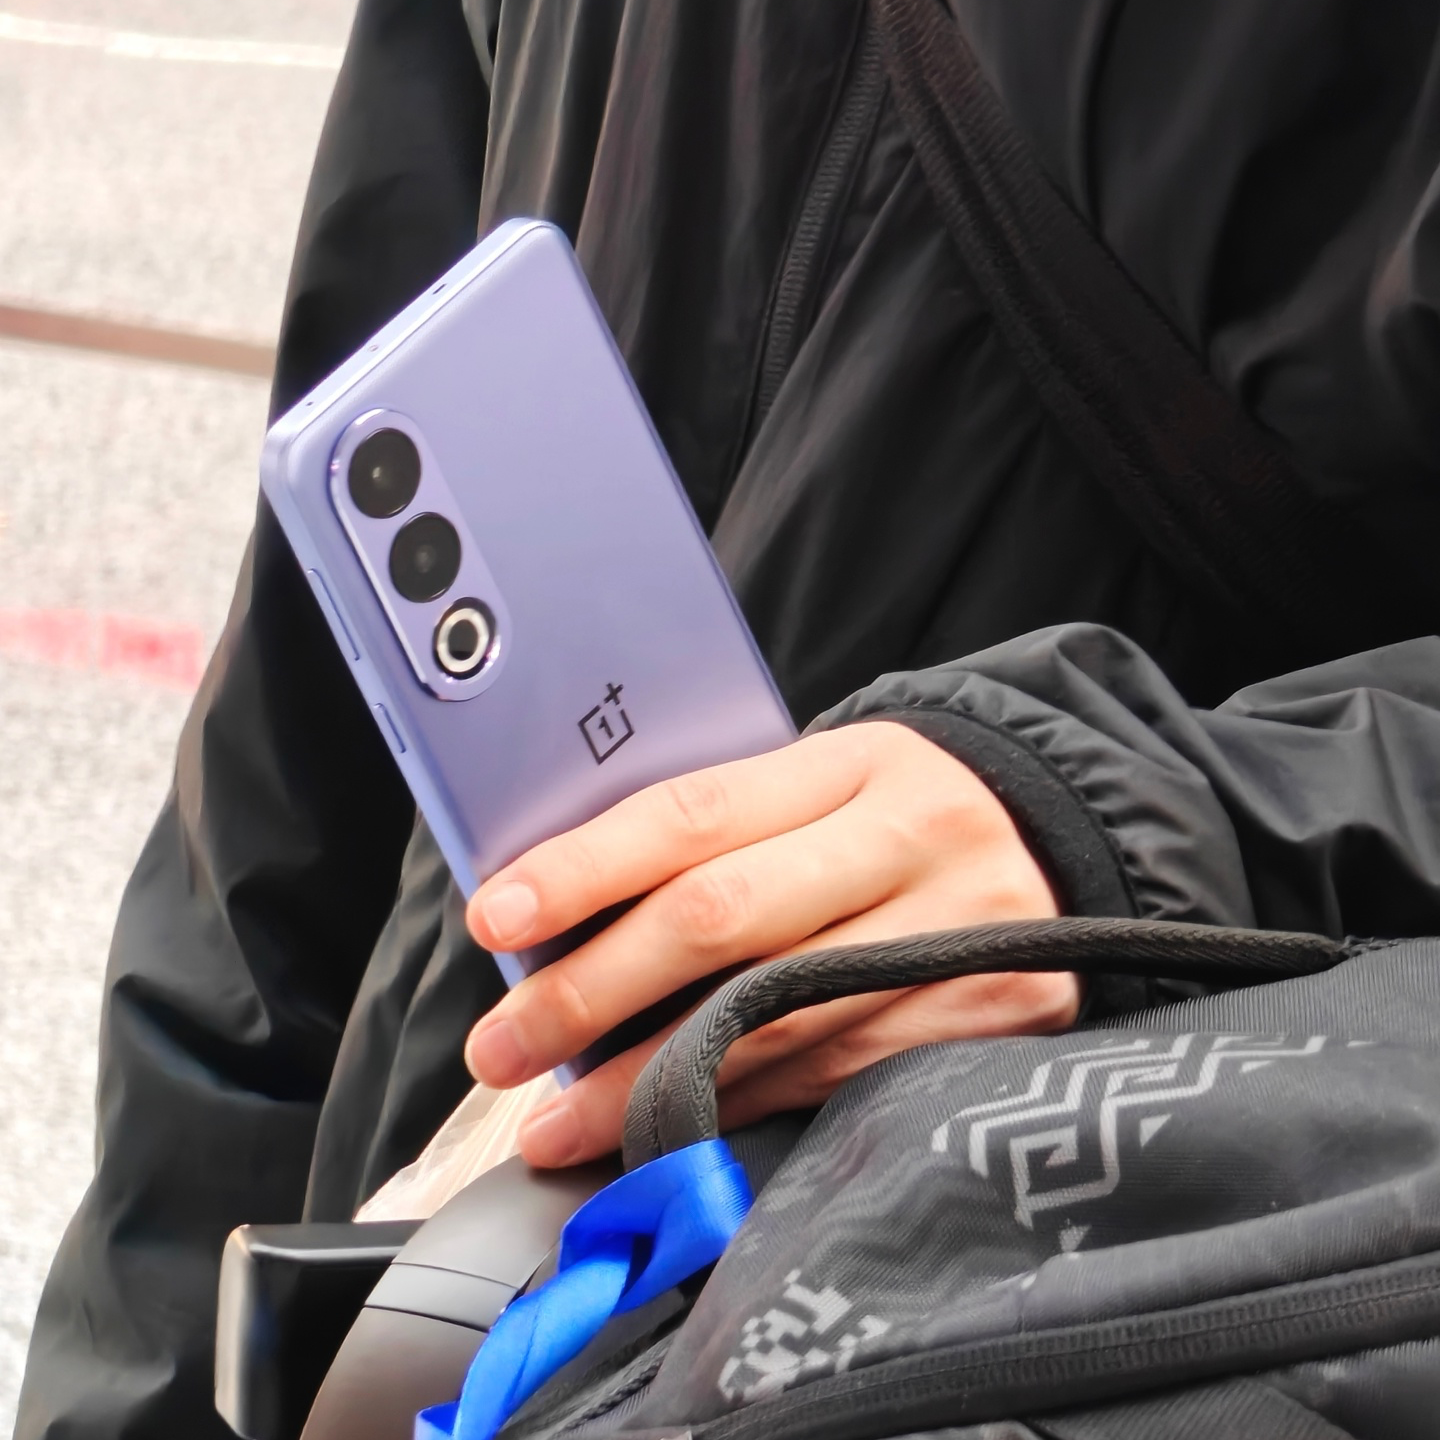 一加 Ace 3V 手机紫色真机曝光，100 米跨栏运动员夏思凝担任 AI 体验官-手机新闻-